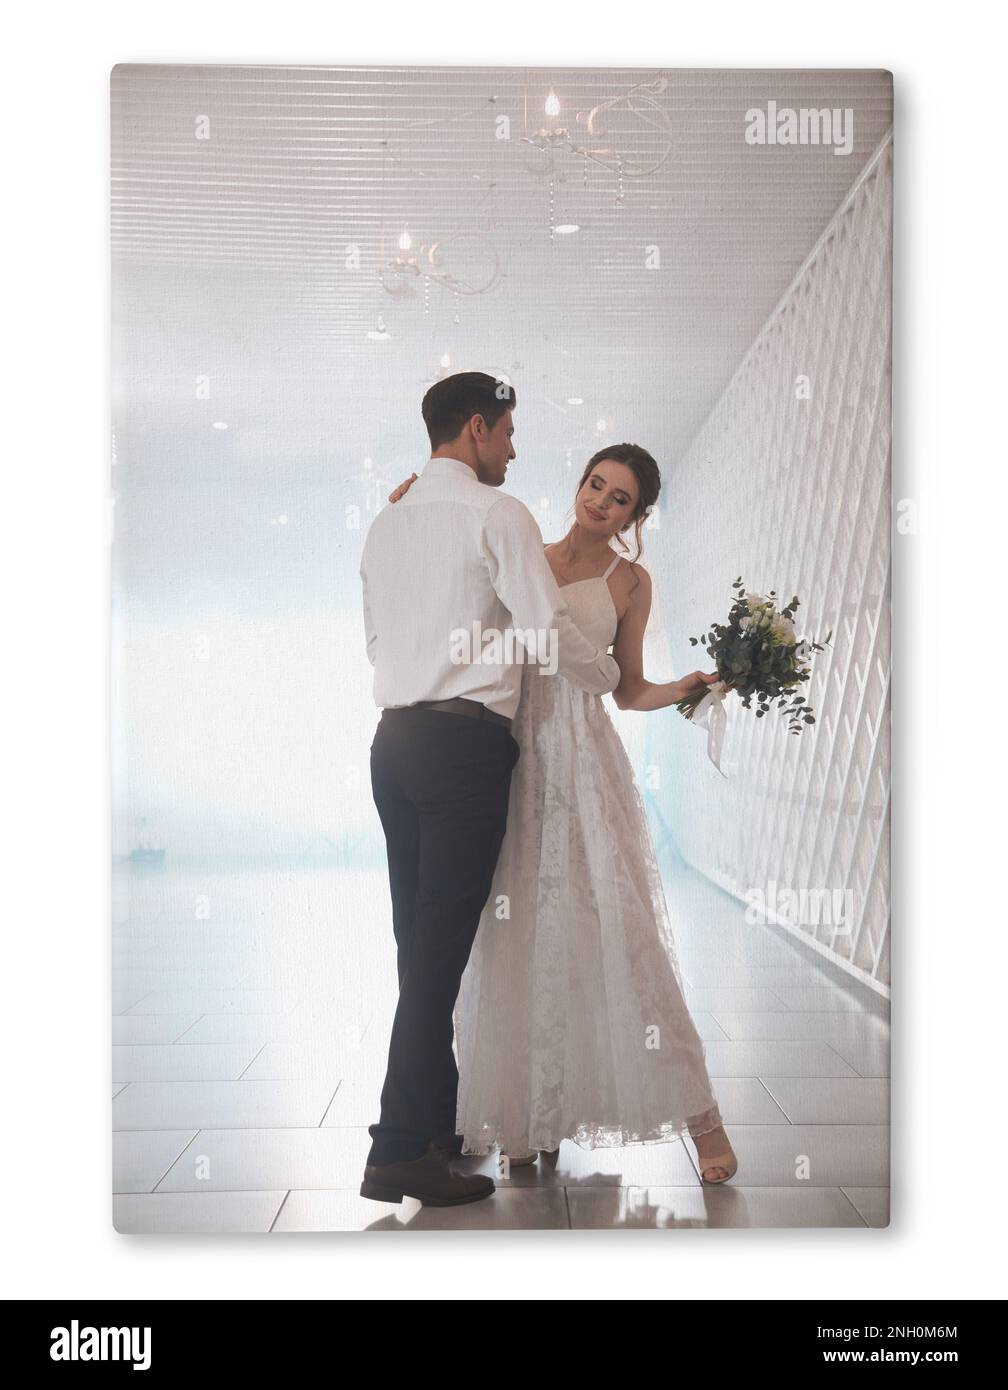 Photo imprimée sur toile, fond blanc. Un couple heureux et récemment refait danser ensemble dans un hall festif Banque D'Images